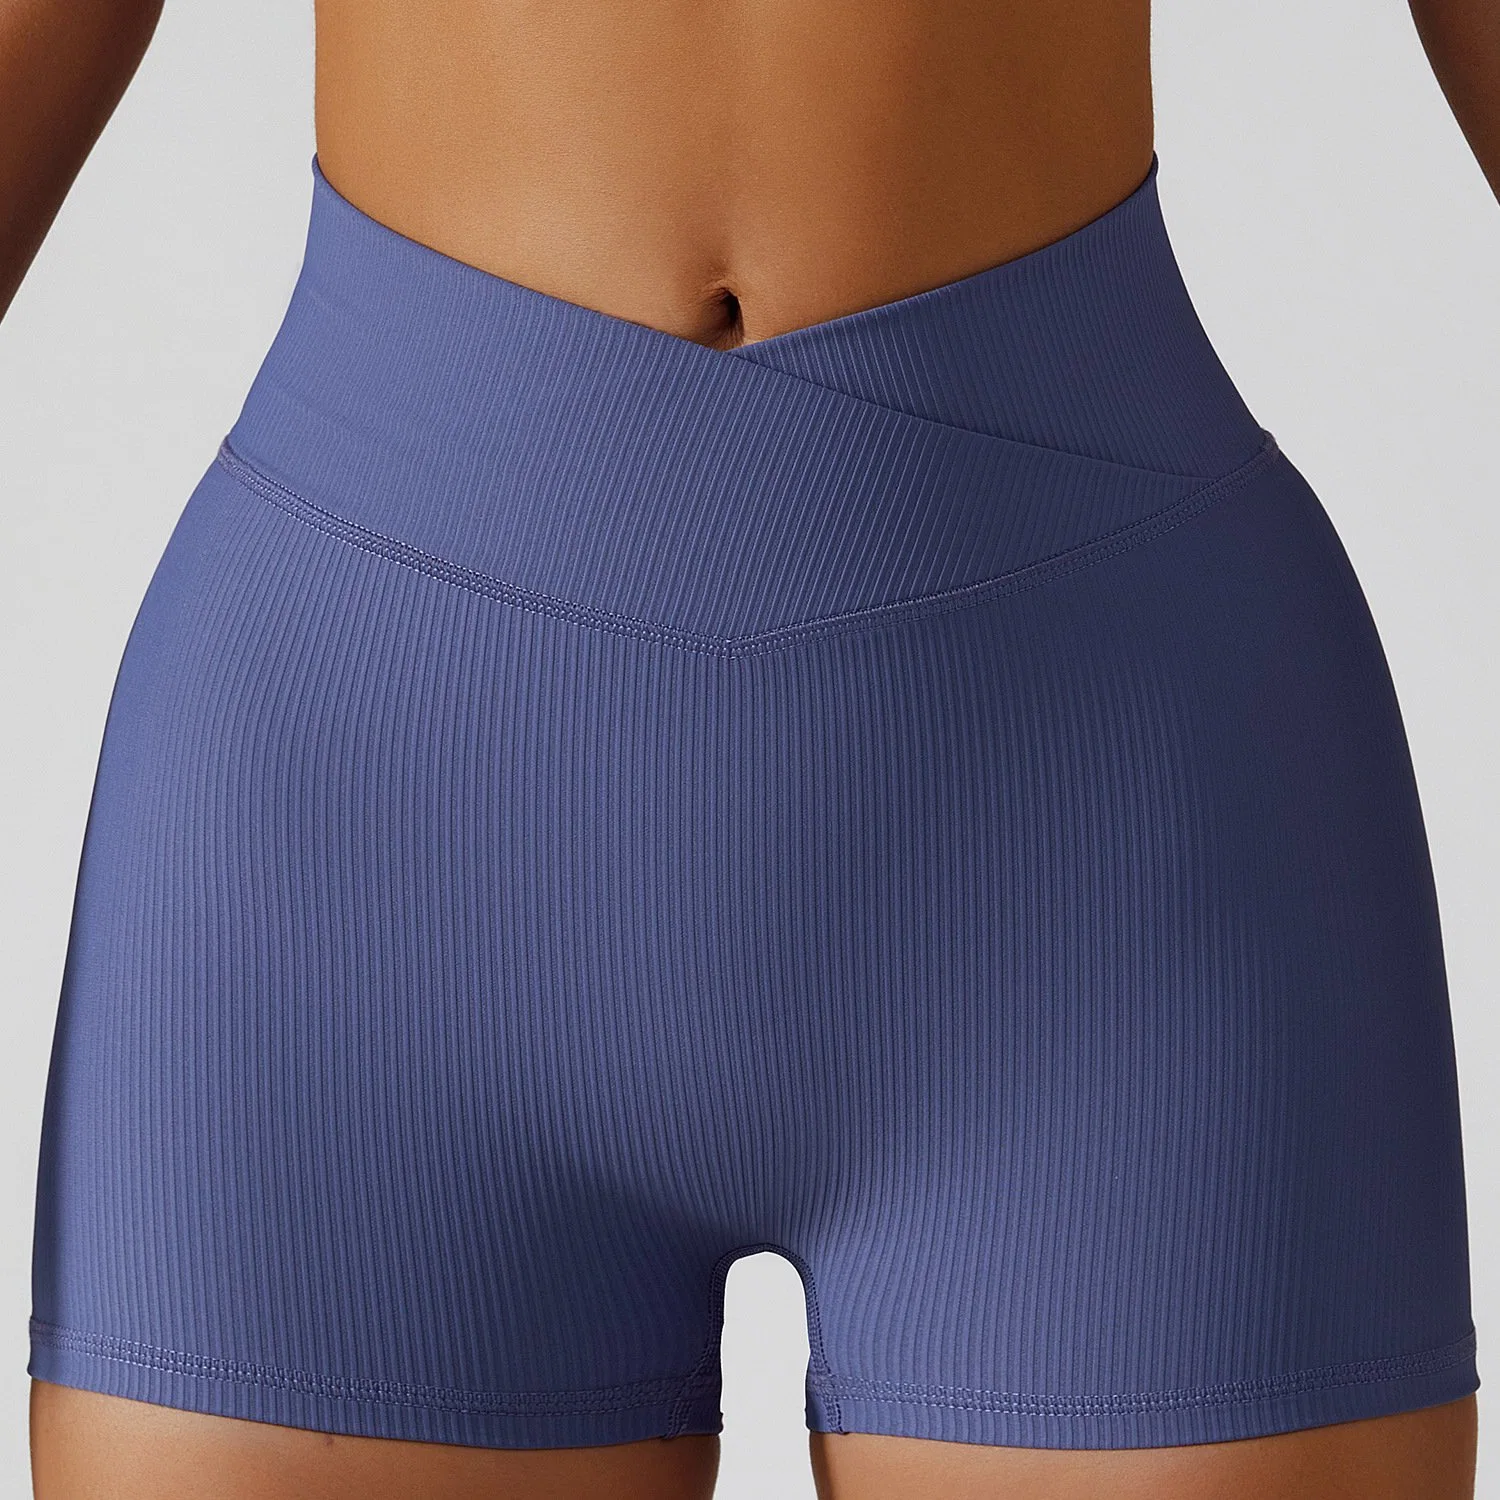 Bdk6397 Las mujeres de rosca fina cintura alta correr Fitness Yoga pantalones cortos pantalones cortos deportes de exterior